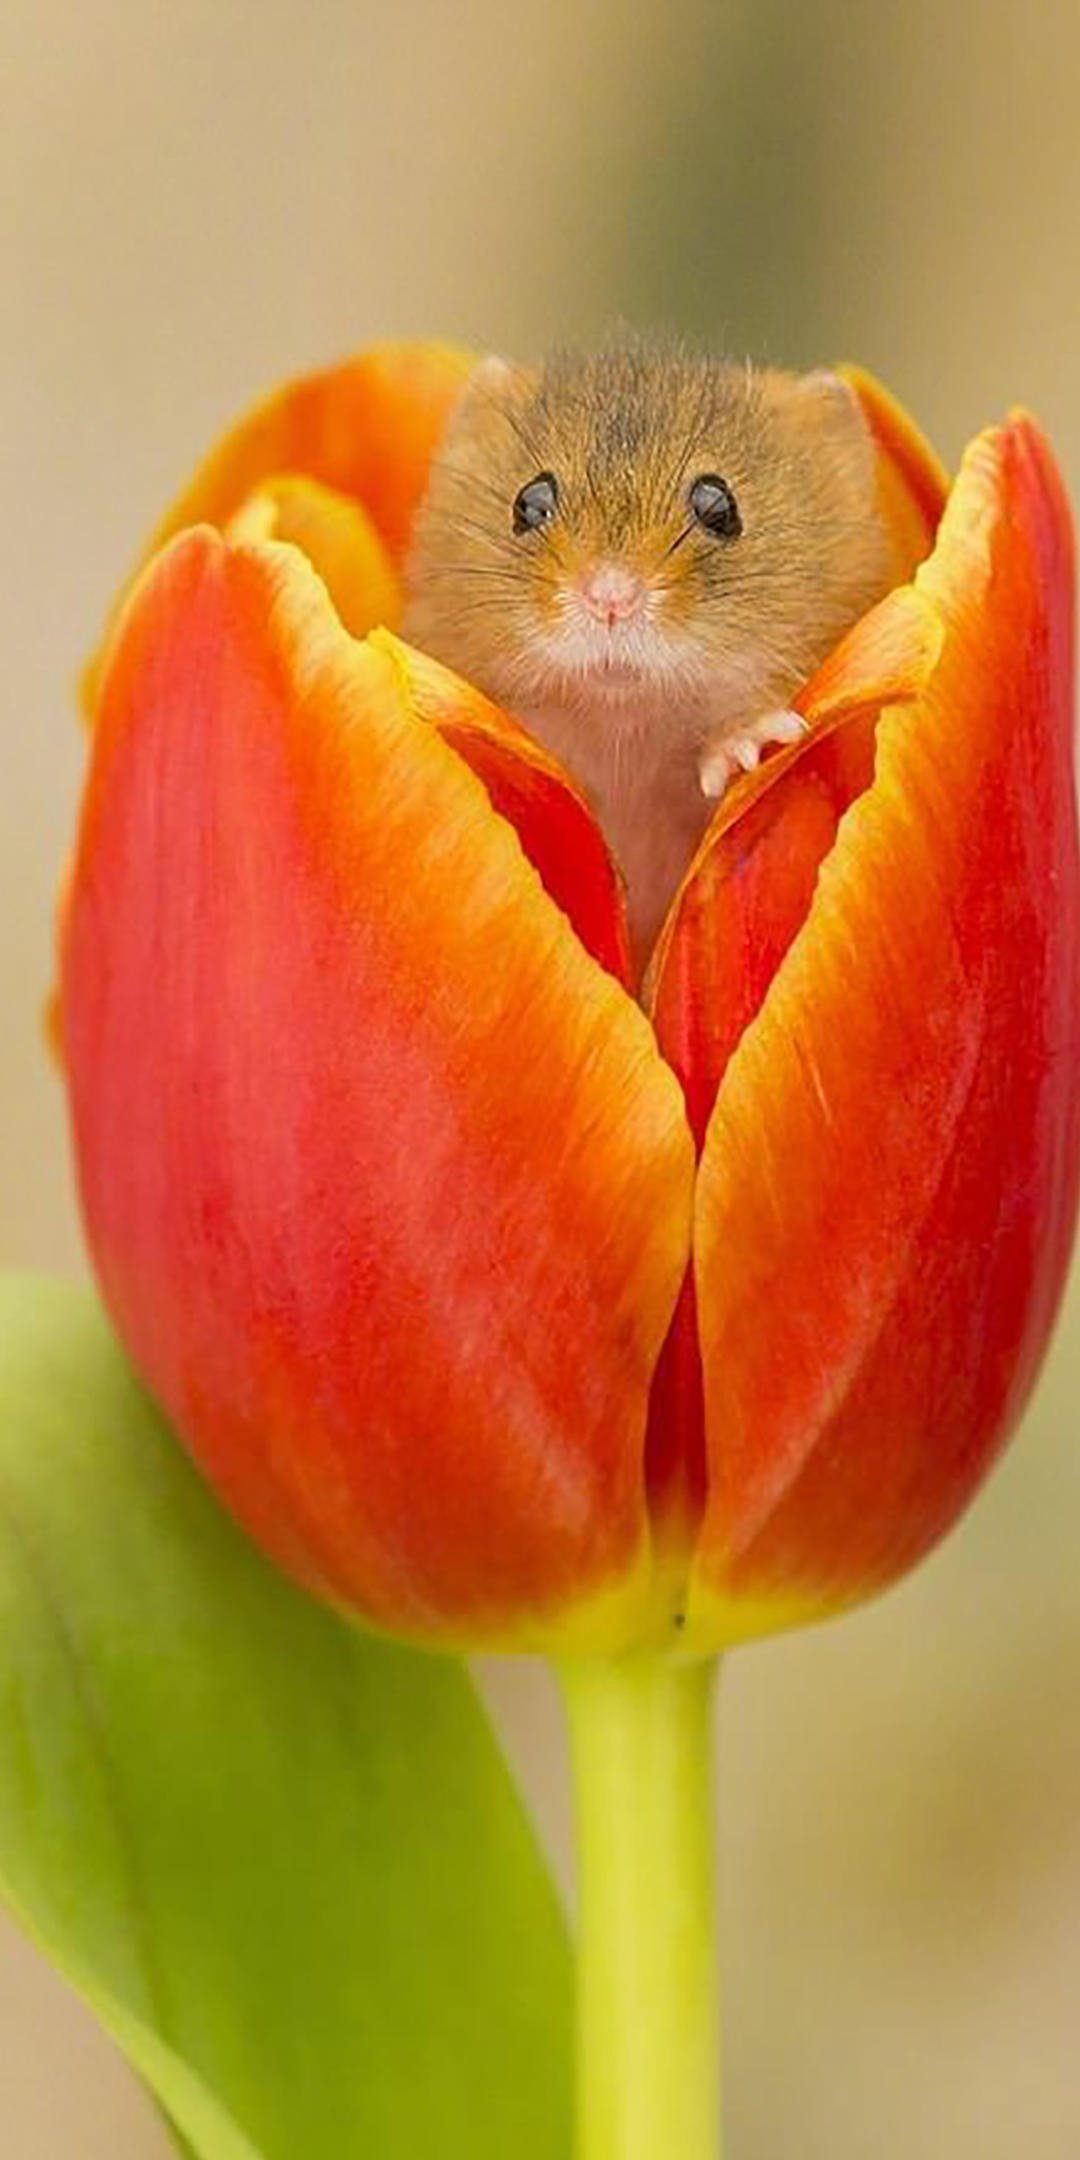 花苞里的可爱小仓鼠,高清图片,手机壁纸